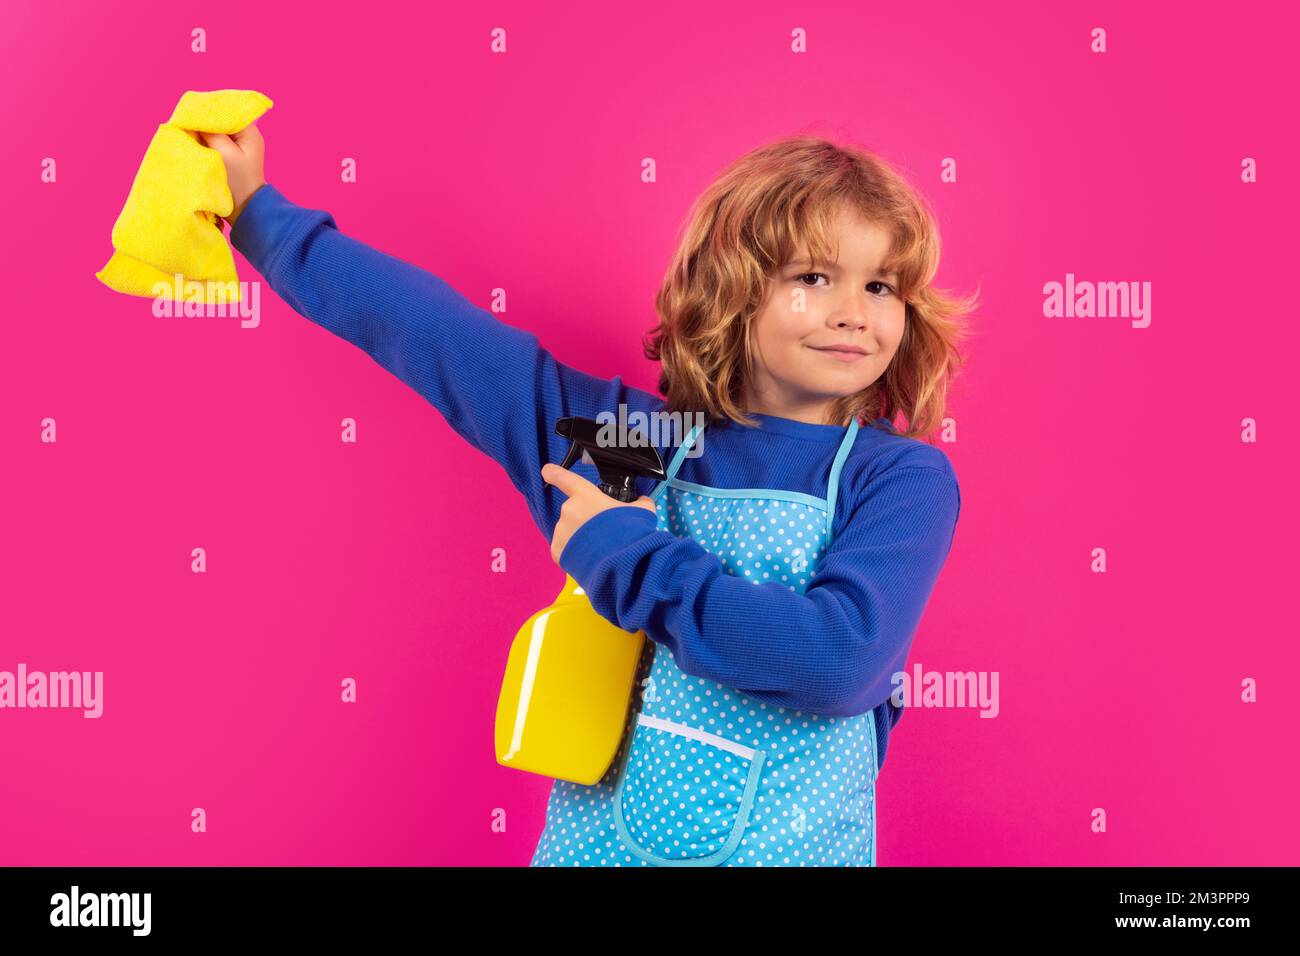 Uso infantil plumero y guantes para la limpieza. Divertido niño fregando la casa. Accesorio de limpieza, suministros de limpieza. Limpieza y limpieza del hogar. Foto de stock